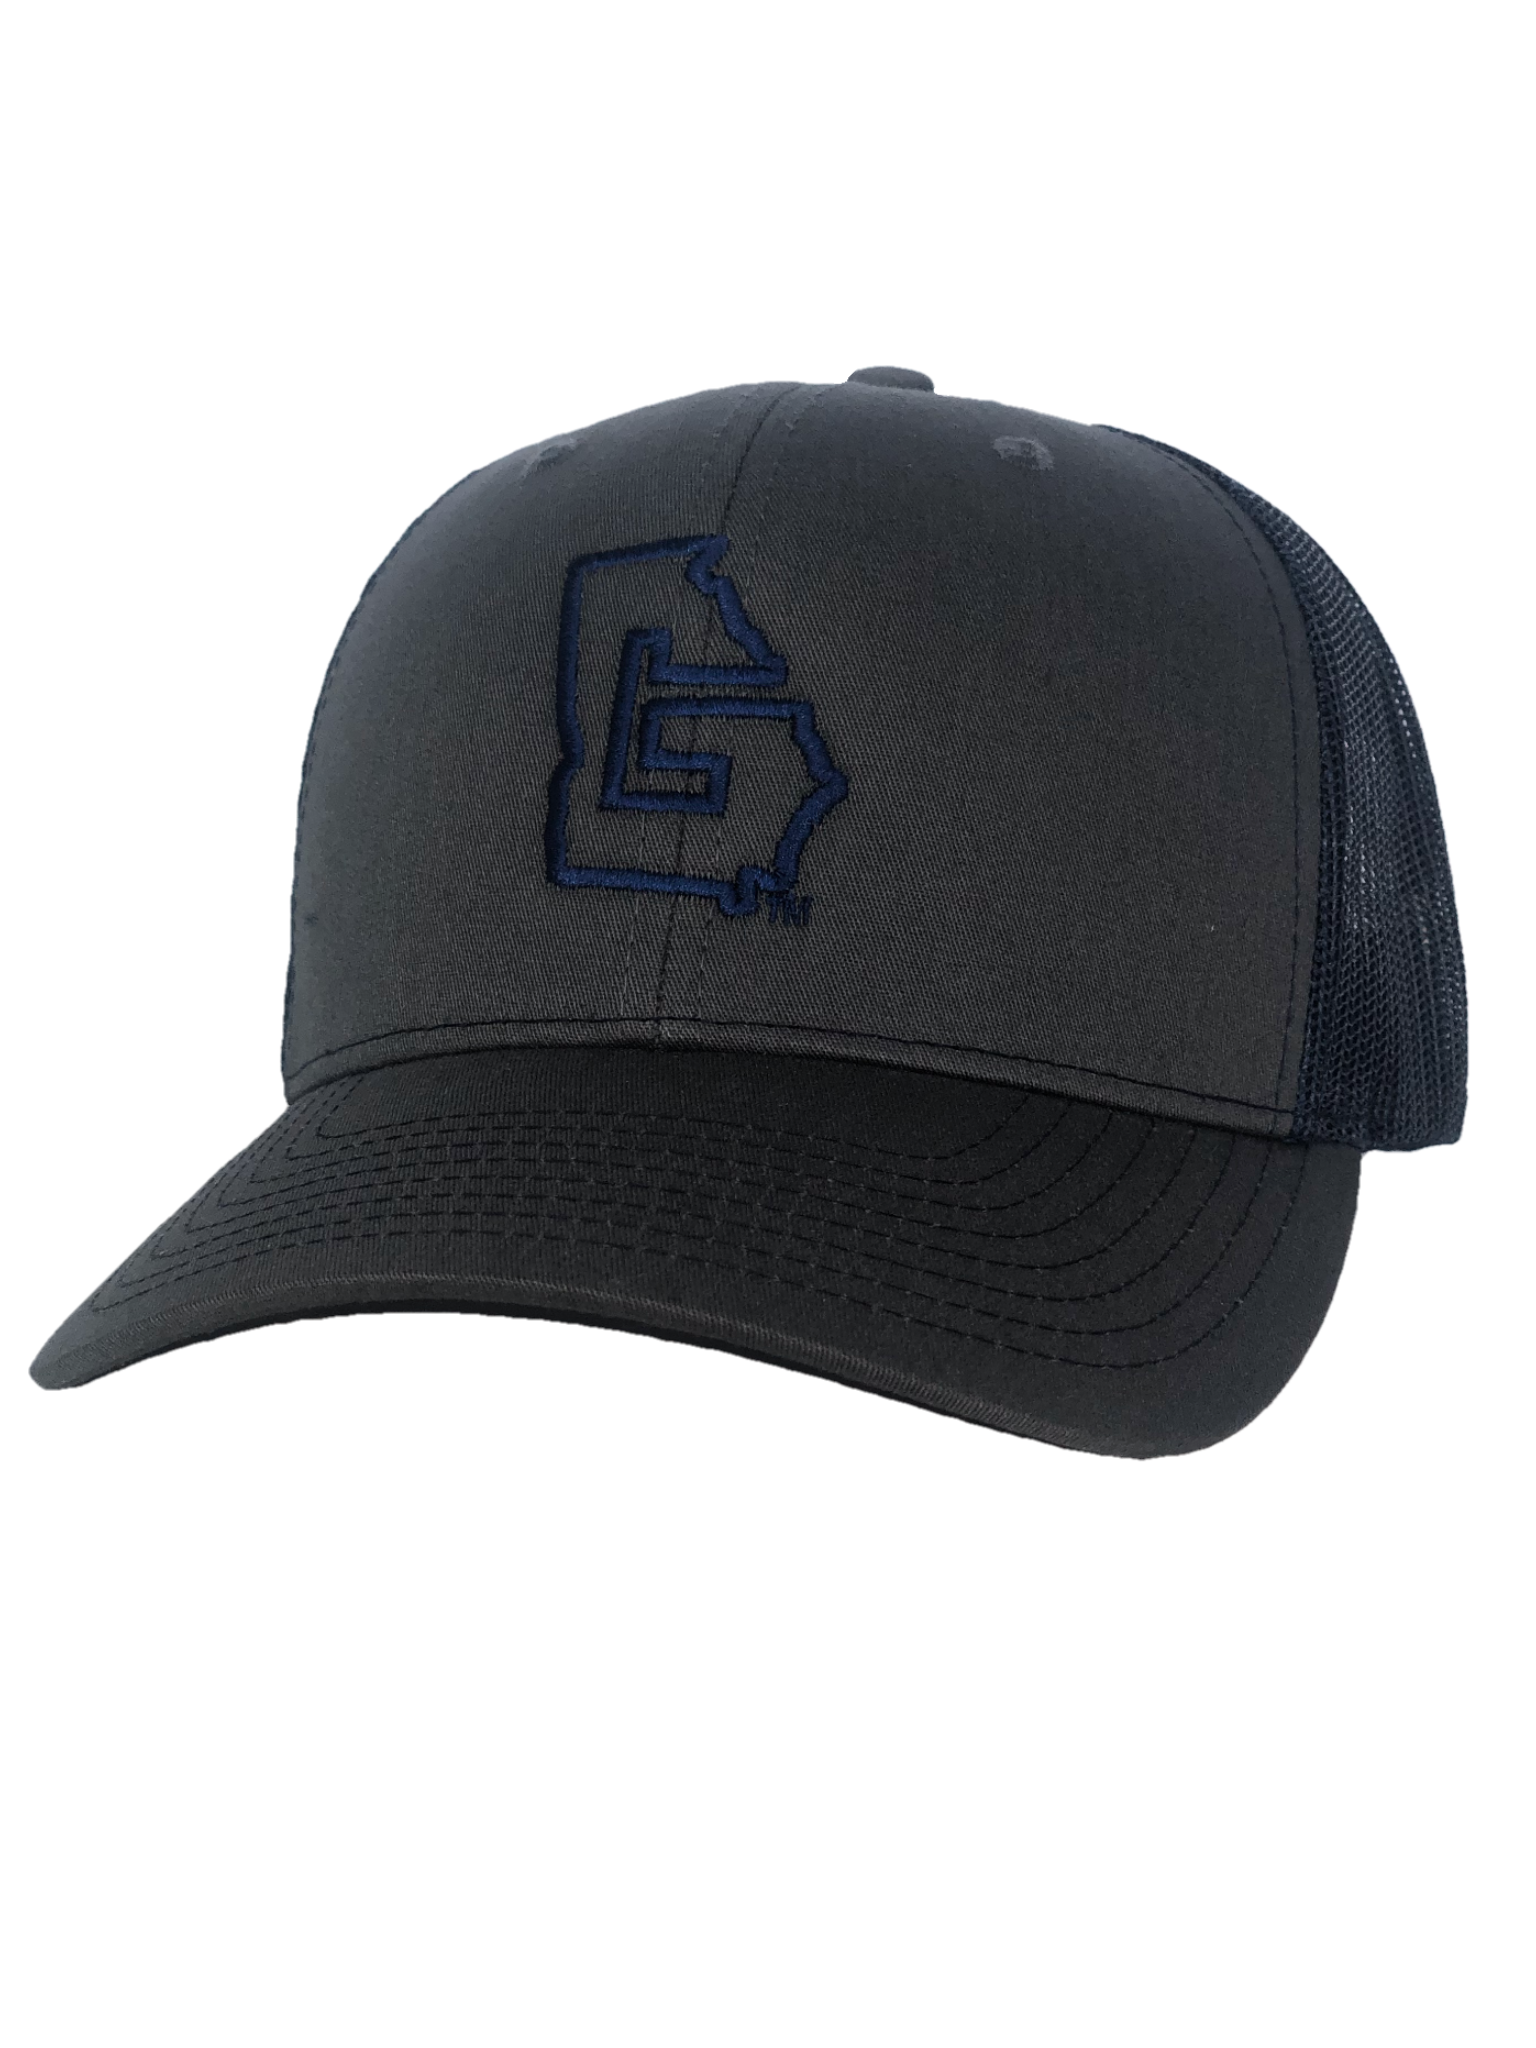 Charcoal/Navy Trucker Hat